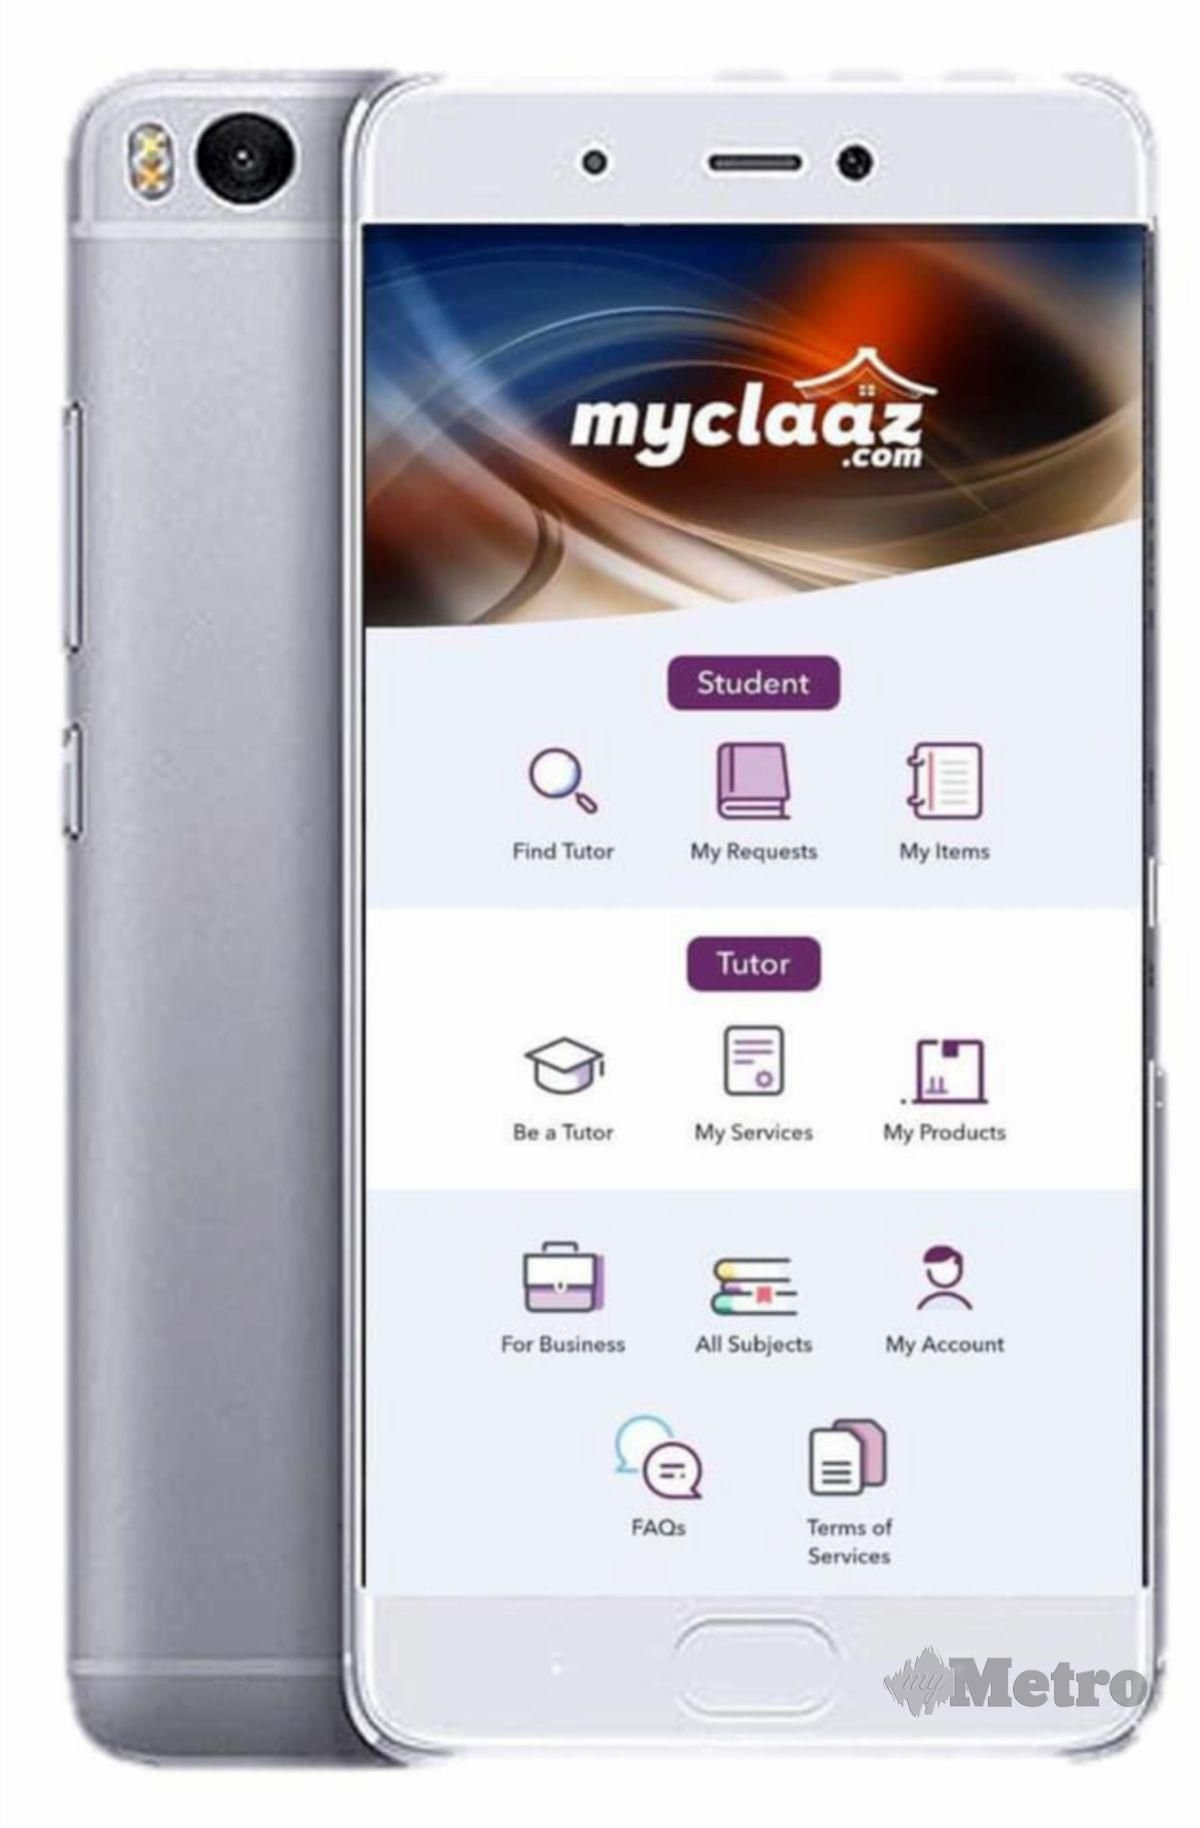  MYCLAAZ.COM merekodkan nilai transaksi  RM500,000 selepas enam bulan dilancarkan.